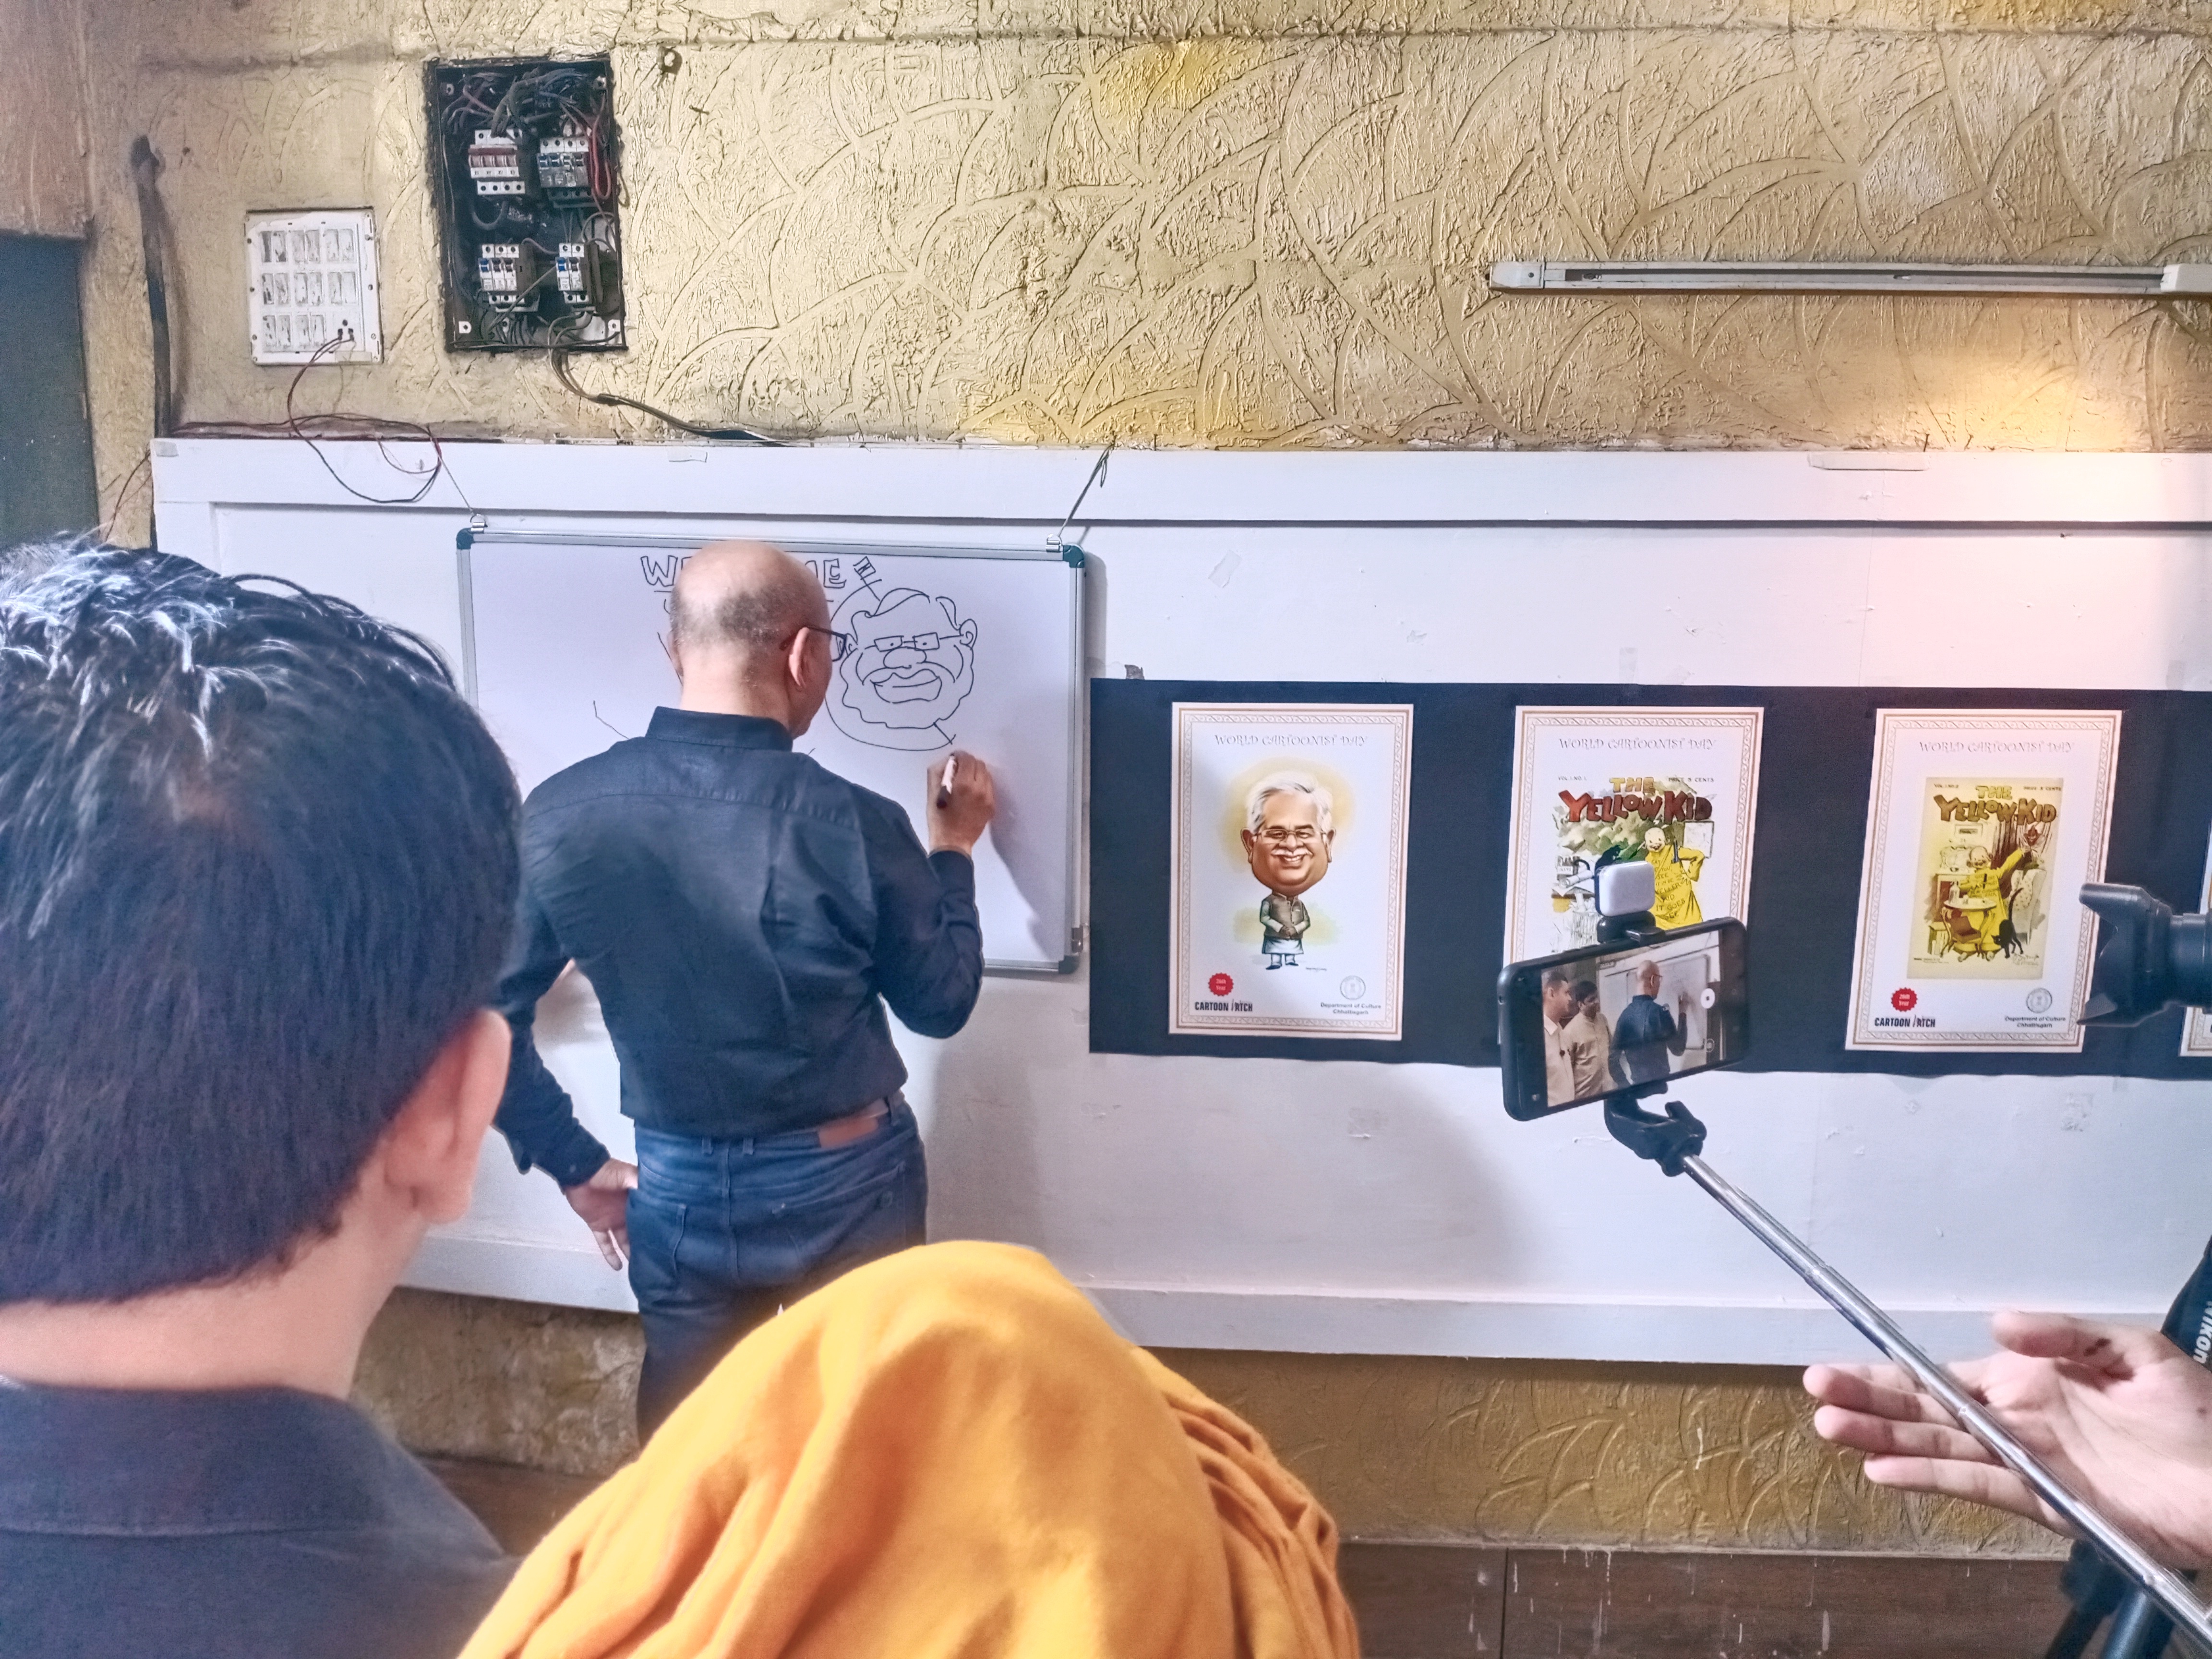 World Cartoonist Day, Cartoon Exhibition, Madhav Joshi, Bibek Sengupta, Director of Trimbak Sharma Culture Department, Vivek Acharya, Cartoonist Sagar Kumar of Chhattisgarh, Bhagwat Sahu, Ajay Saxena, Sangharsh Yadu, Sanjay Dixit, Subhash Sharma Raipur, Chhattisgarh, Khabargali